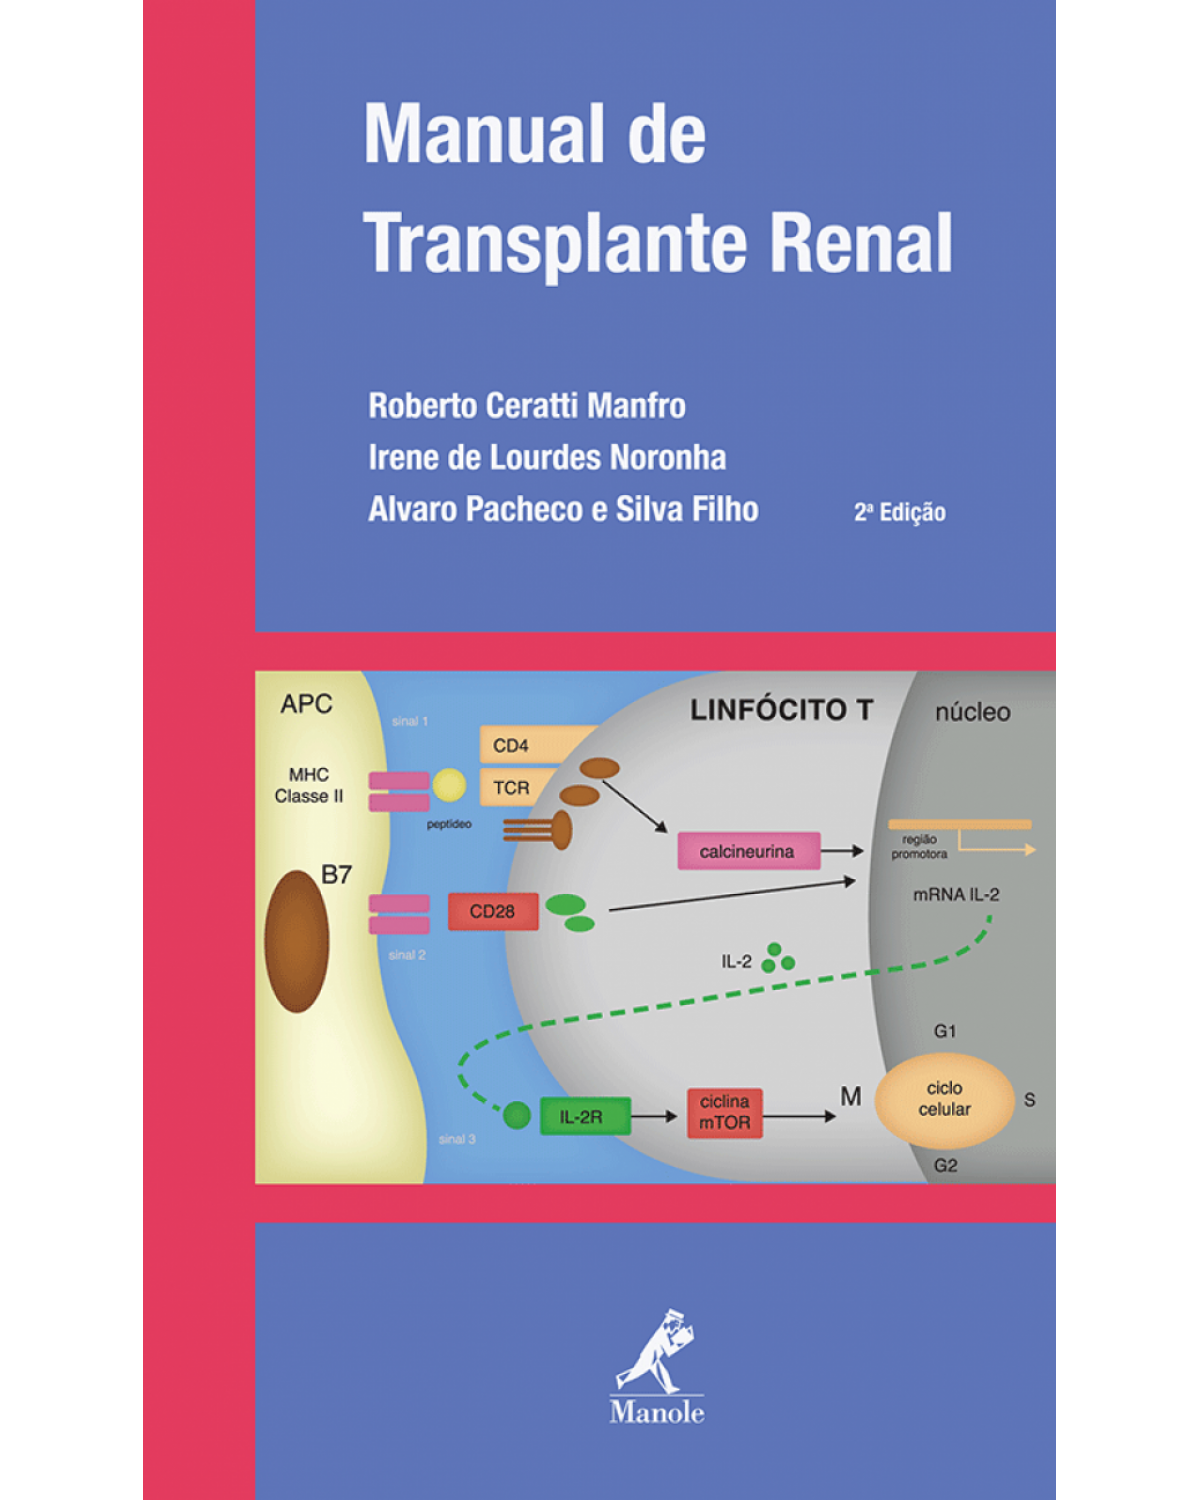 Manual de transplante renal - 2ª Edição | 2014